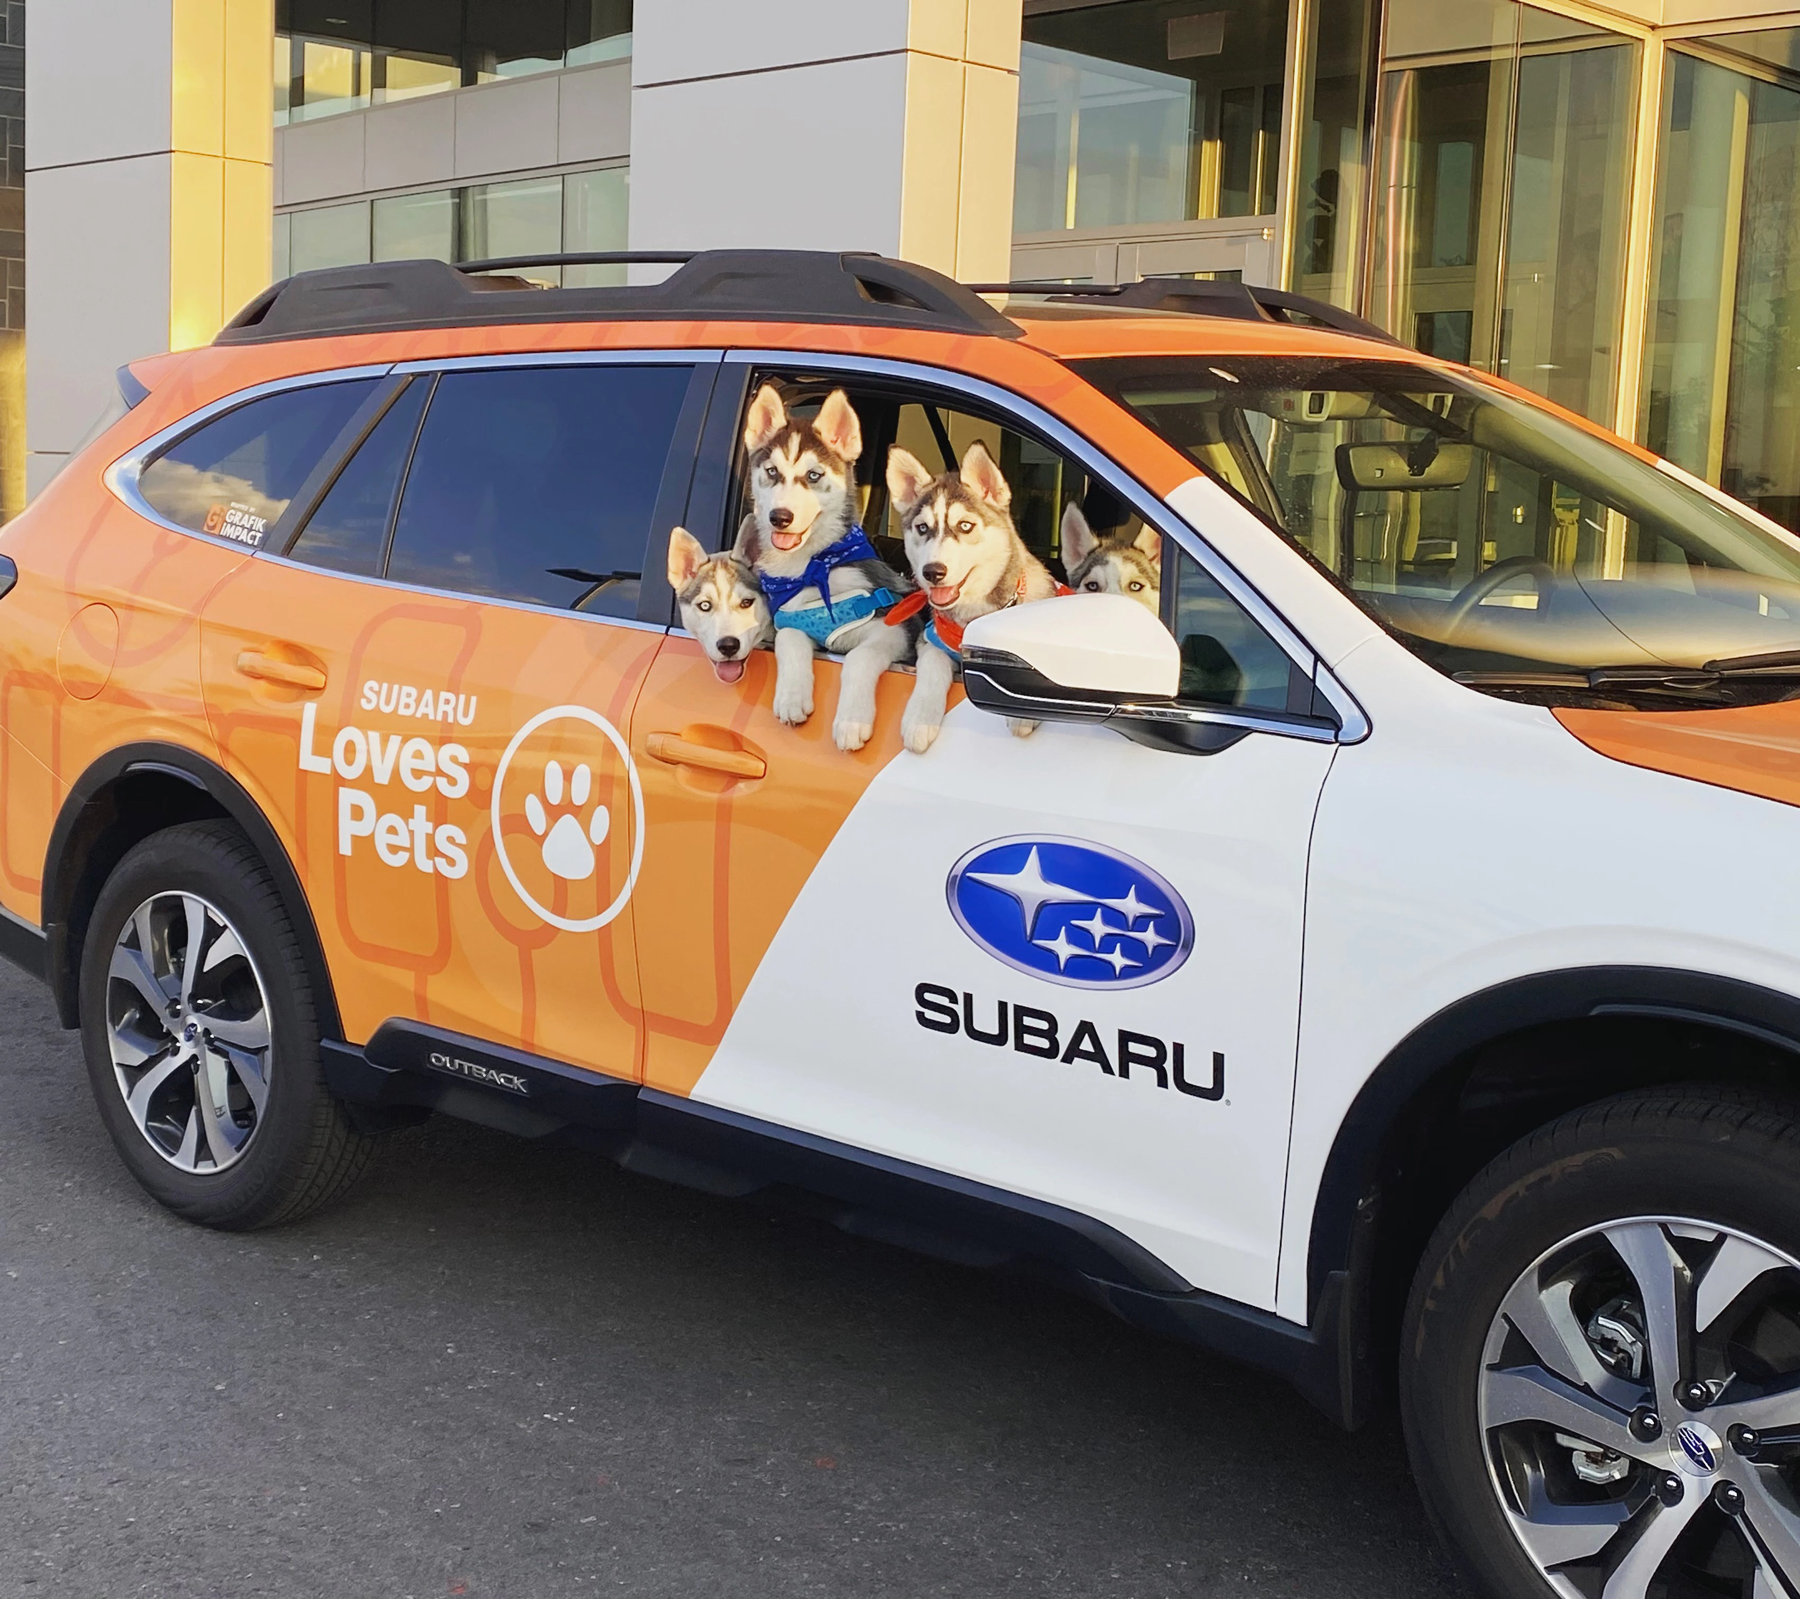 husky-dogs-in-a-Subaru-Loves-Pet-car